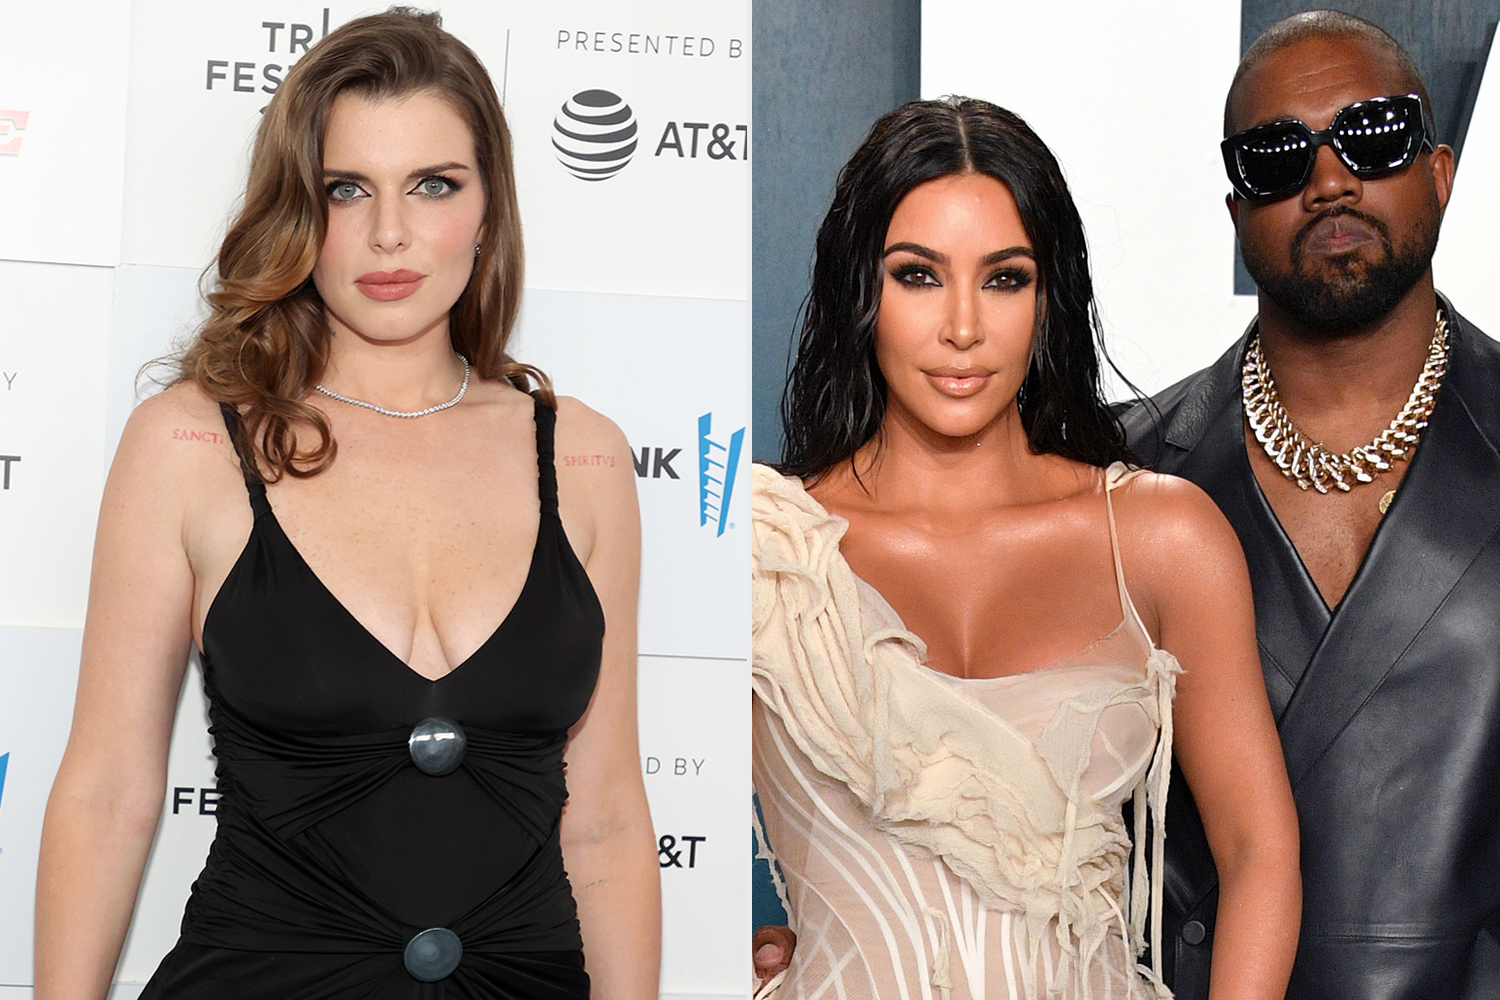 Julia fox says Kanye 'weaponized' her against Kim Kardashian